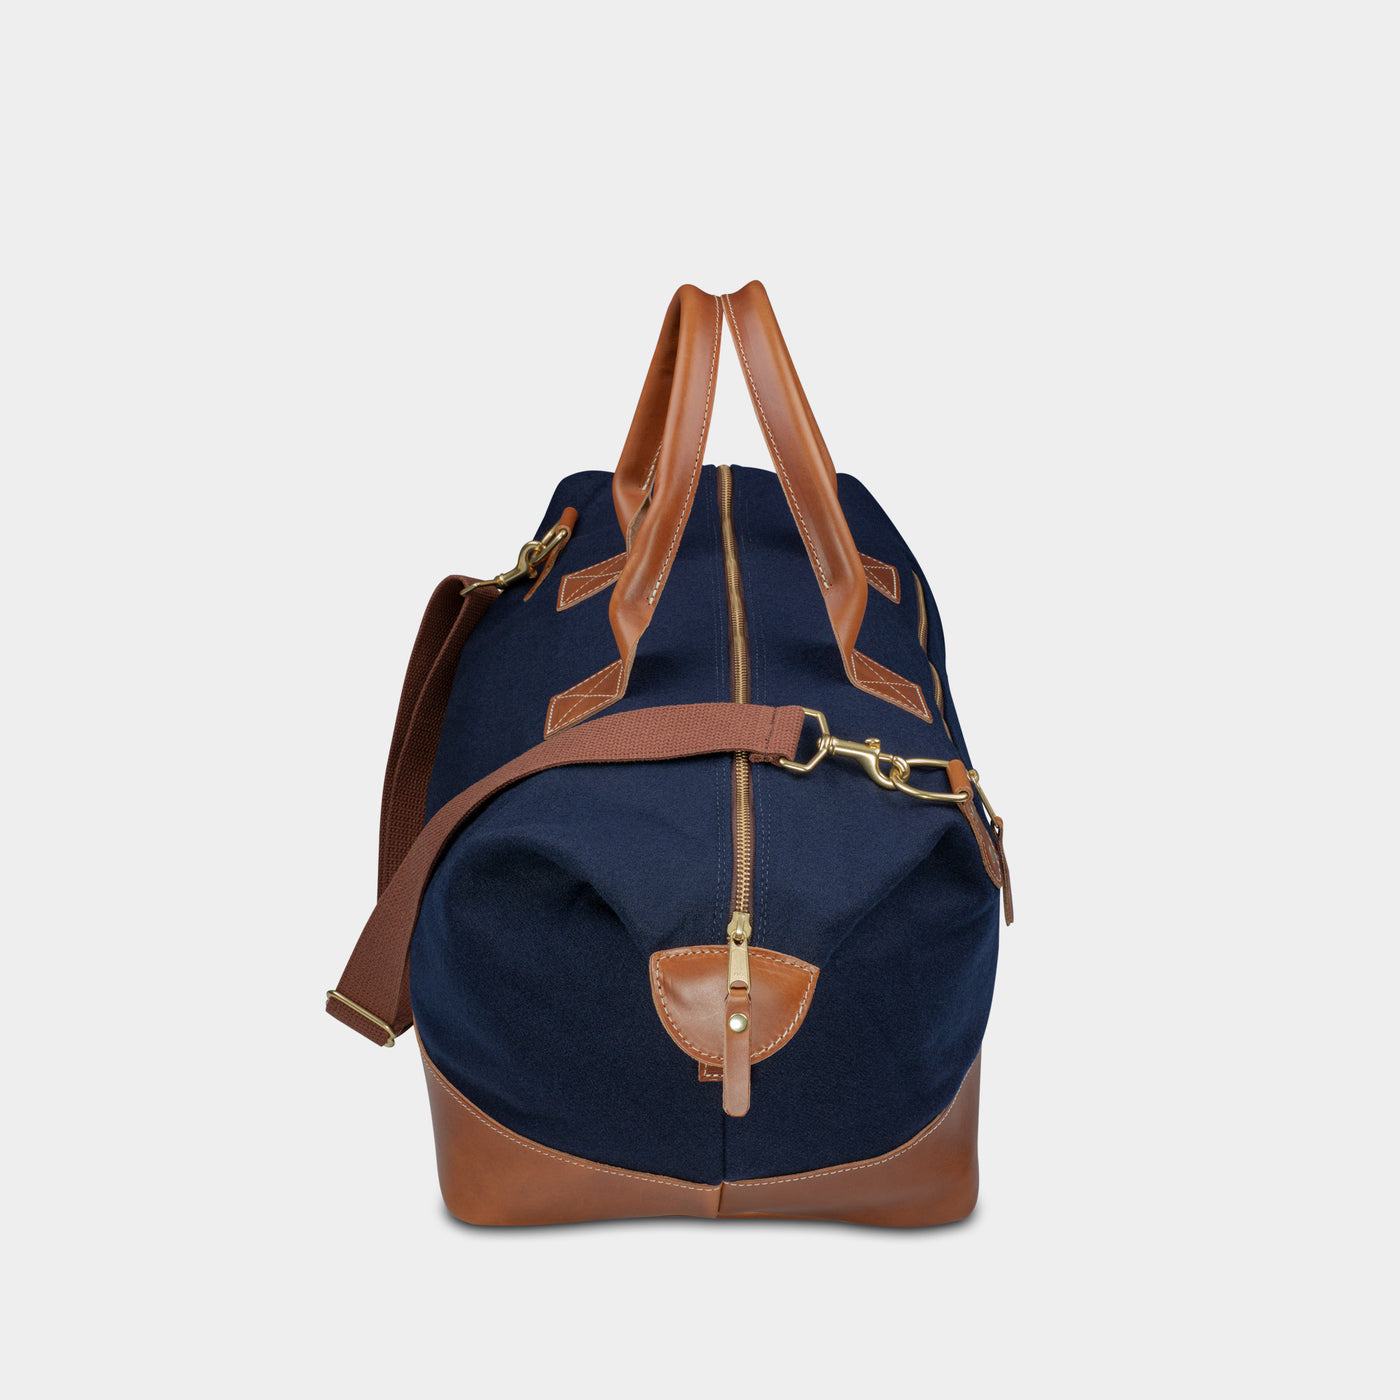 Dallas Cowboys “Star” Weekender Duffle Bag | Heritage Gear